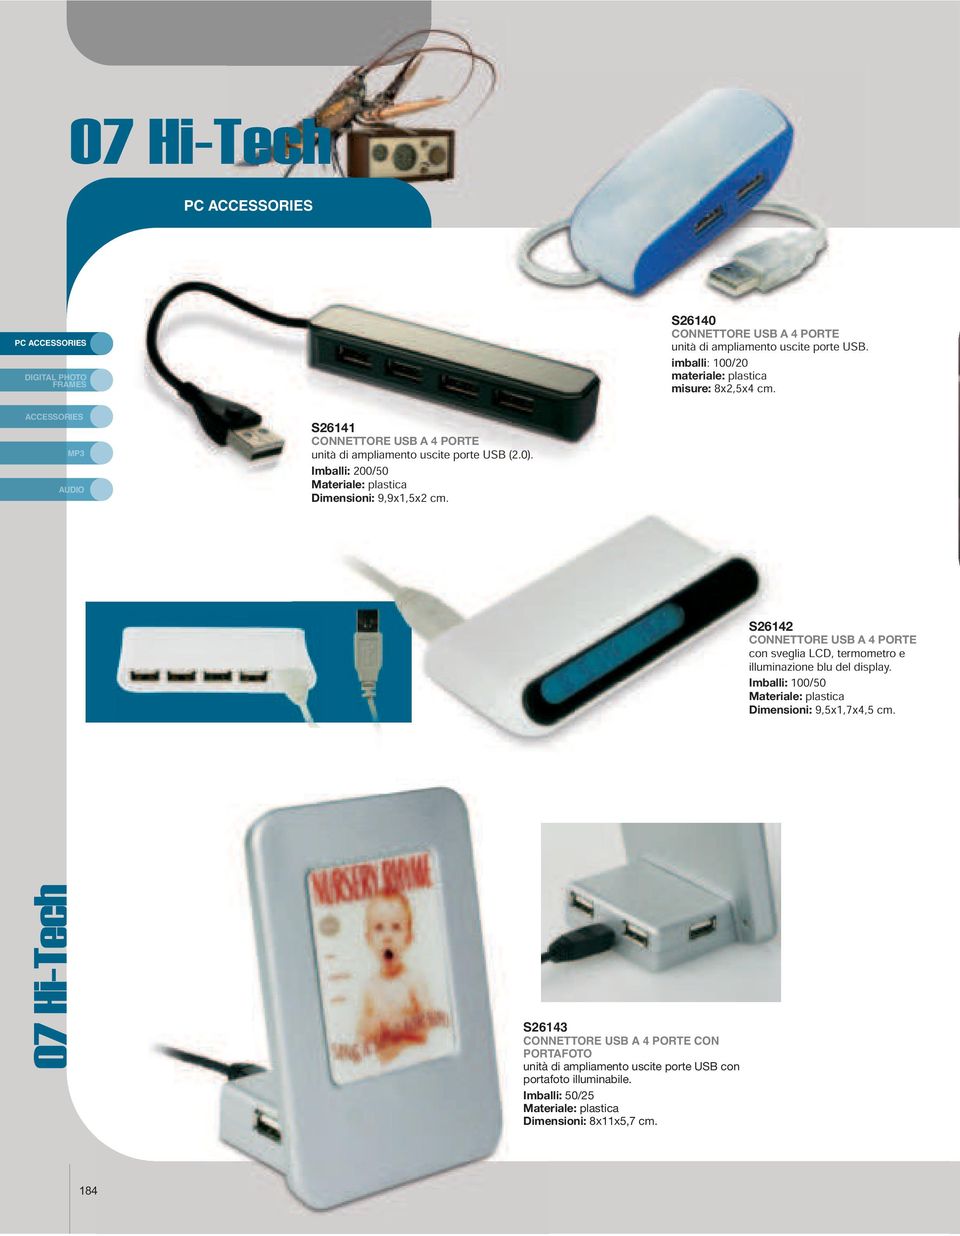 S26142 CONNETTORE USB A 4 PORTE con sveglia LCD, termometro e illuminazione blu del display. Dimensioni: 9,5x1,7x4,5 cm.